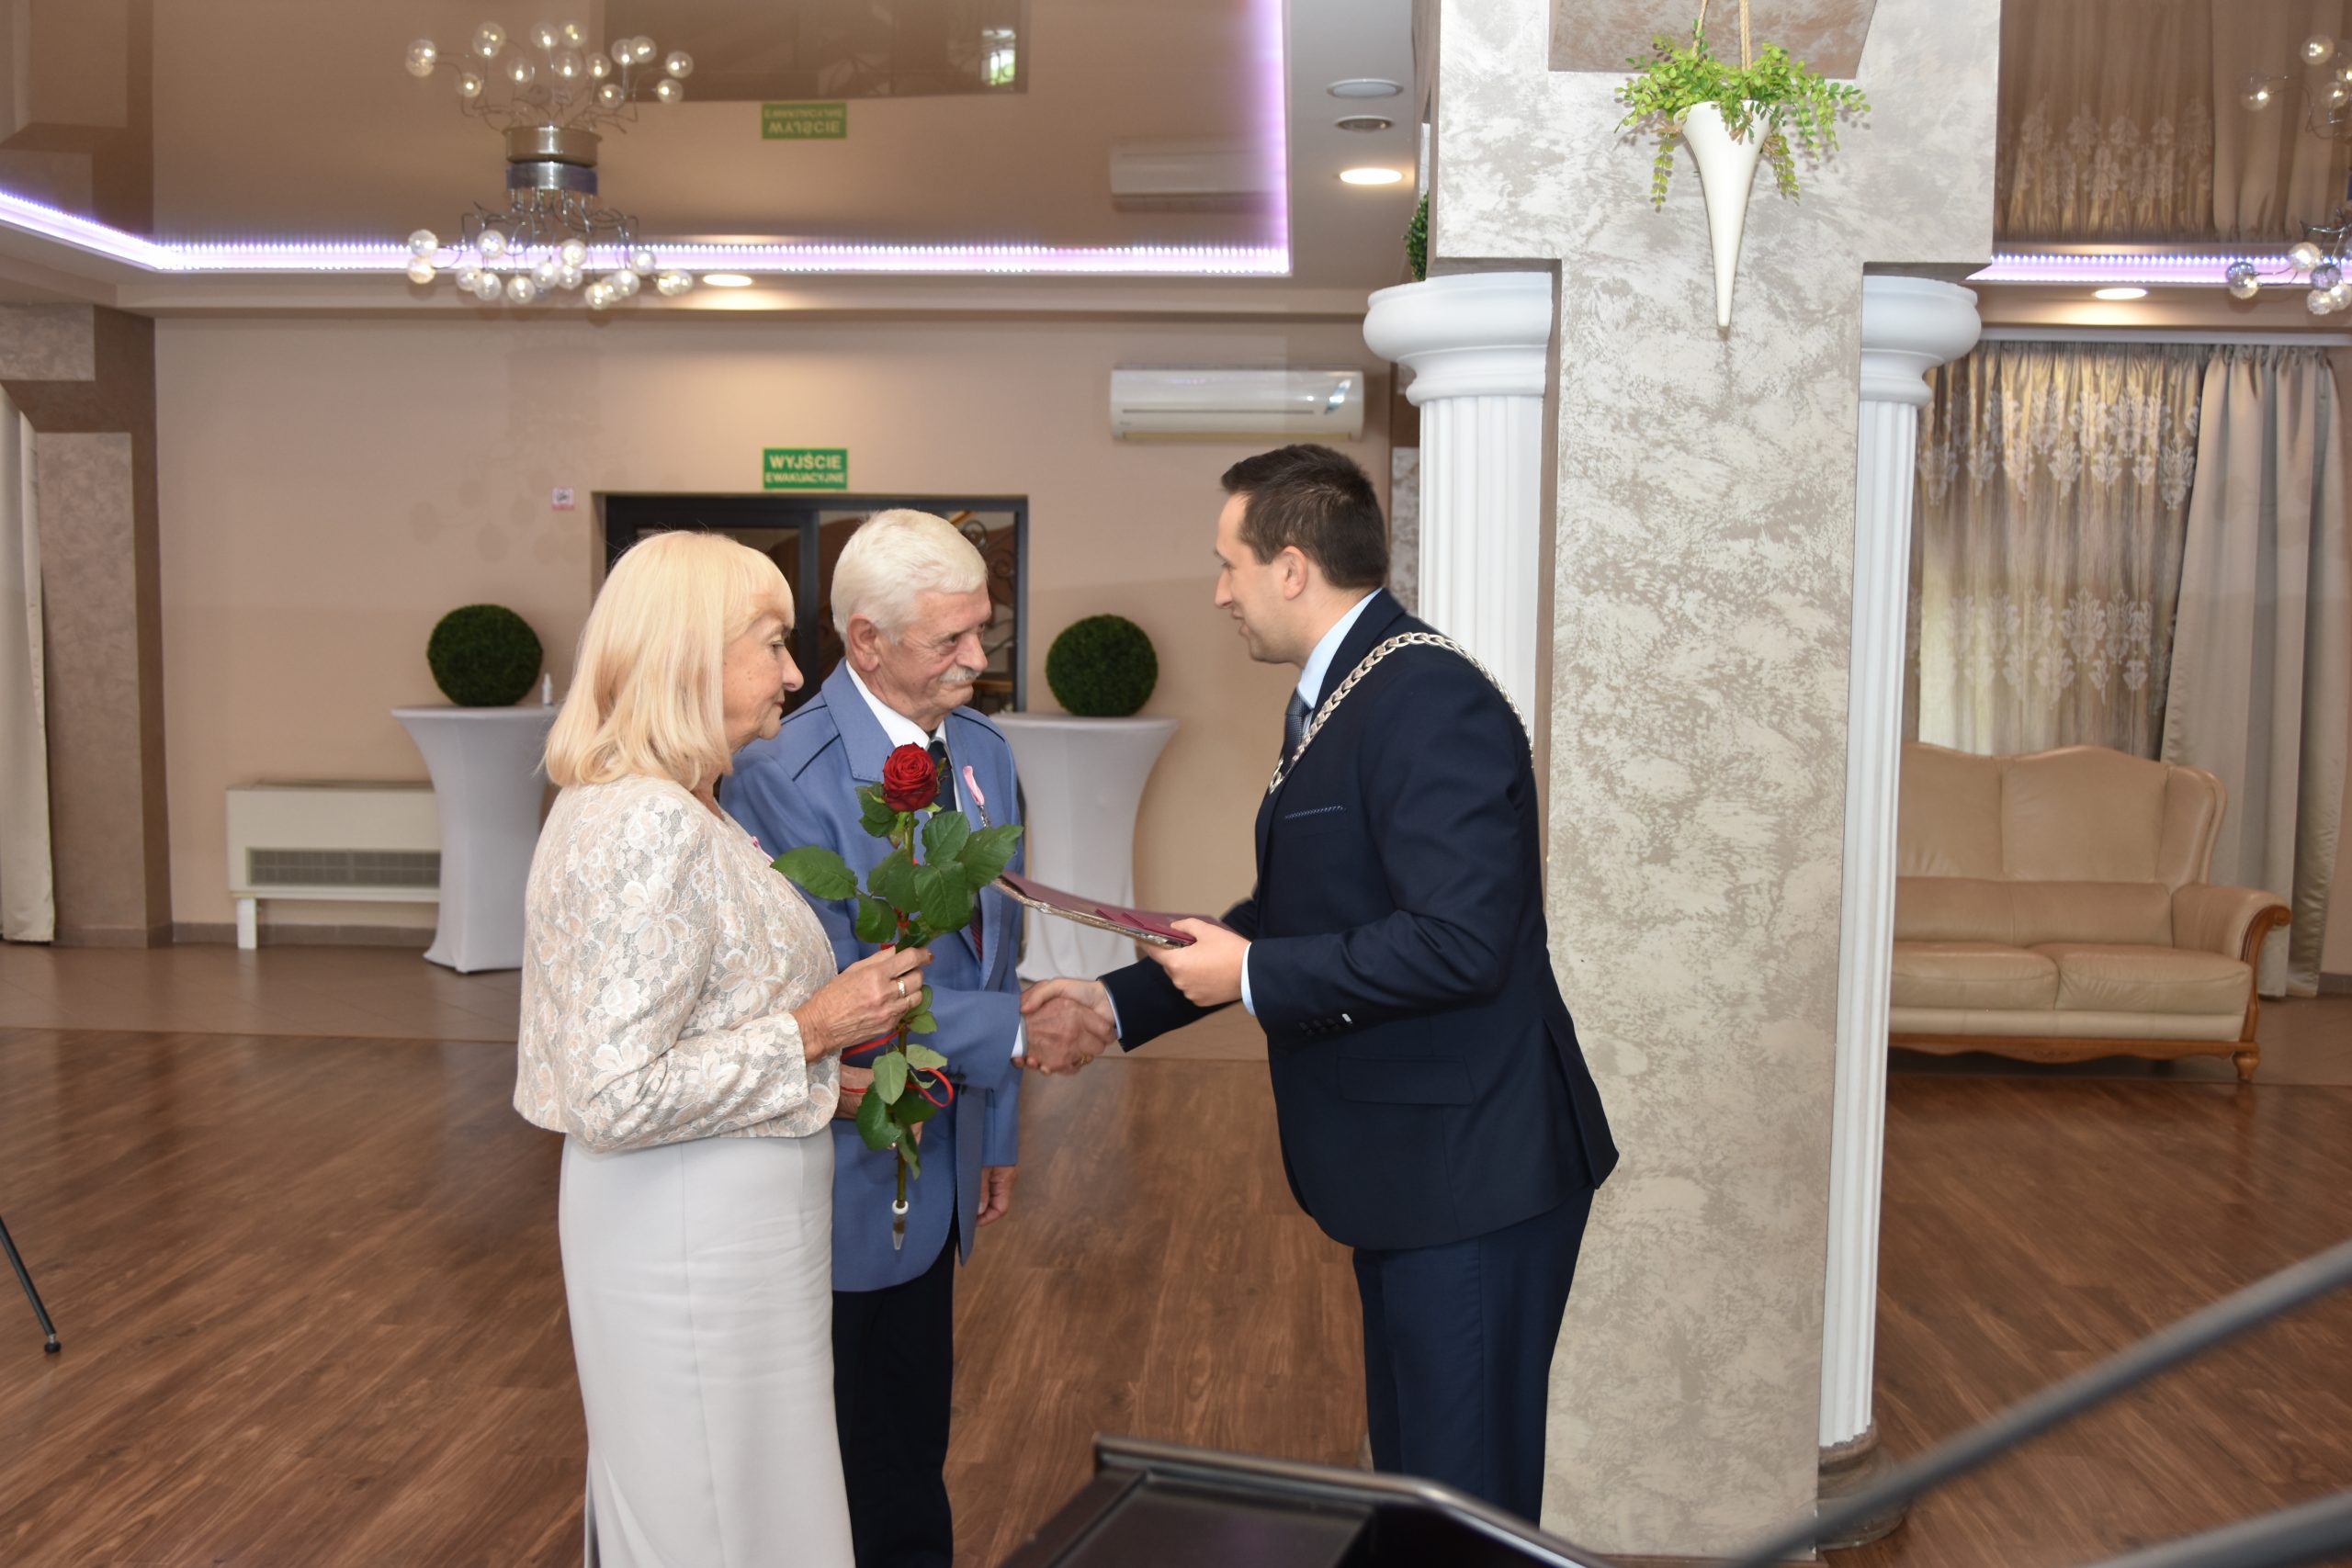 Burmistrz Brzozowa Szymon Stapiński wręcza medale i listy gratulacyjne parze z pięćdziesięcio letnim stażem małżeńskim, gratulując i uściskując dłonie